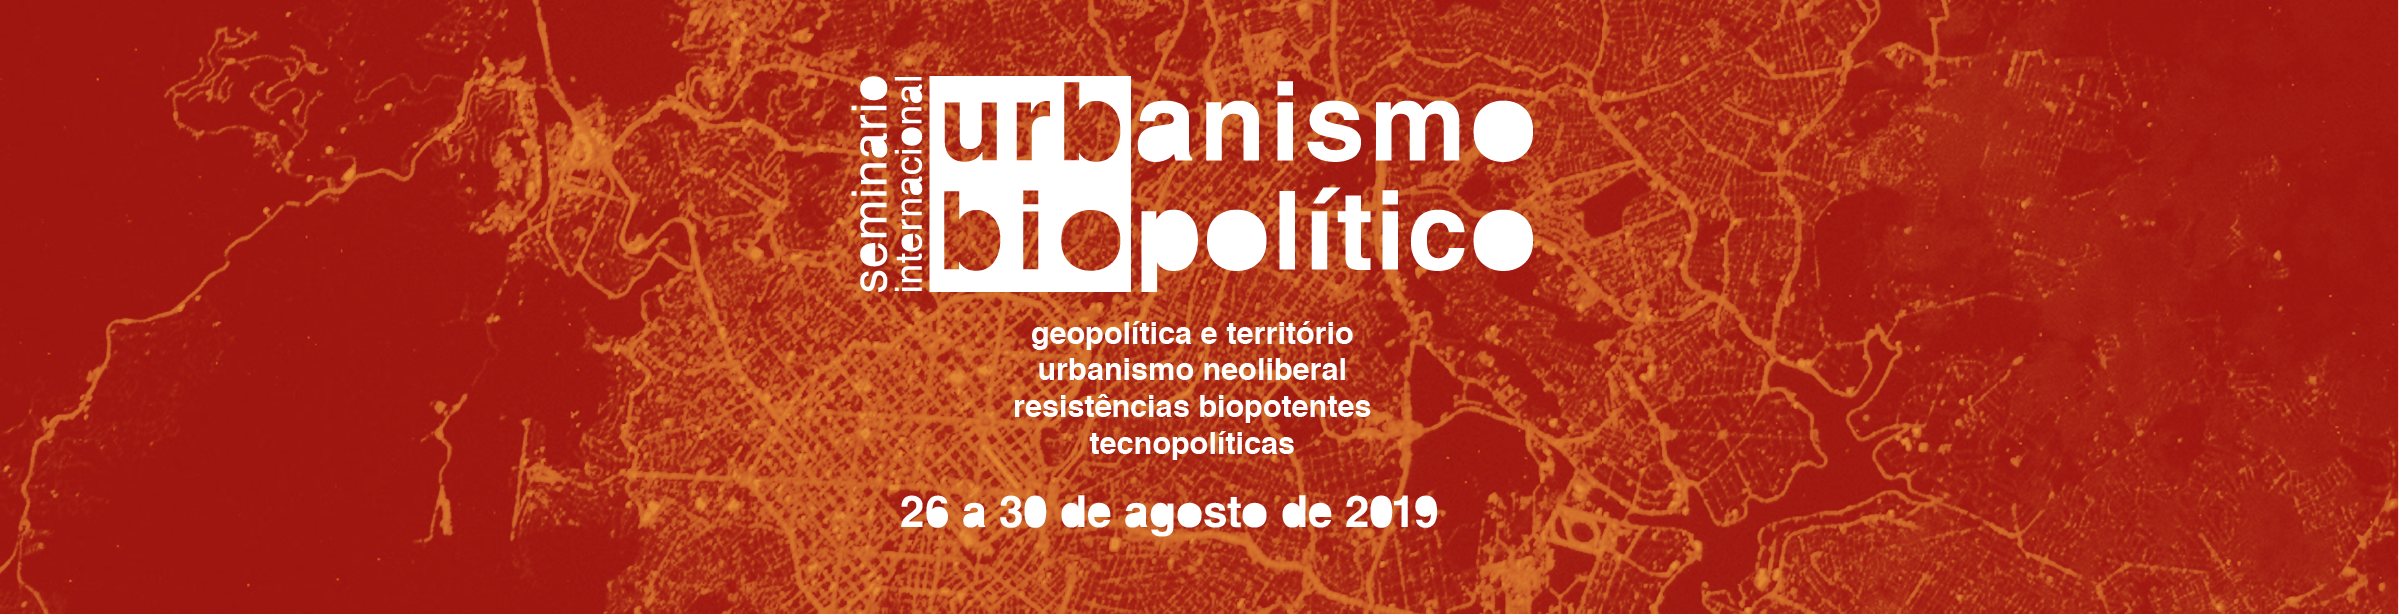 3º Seminário Internacional Urbanismo Biopolítico